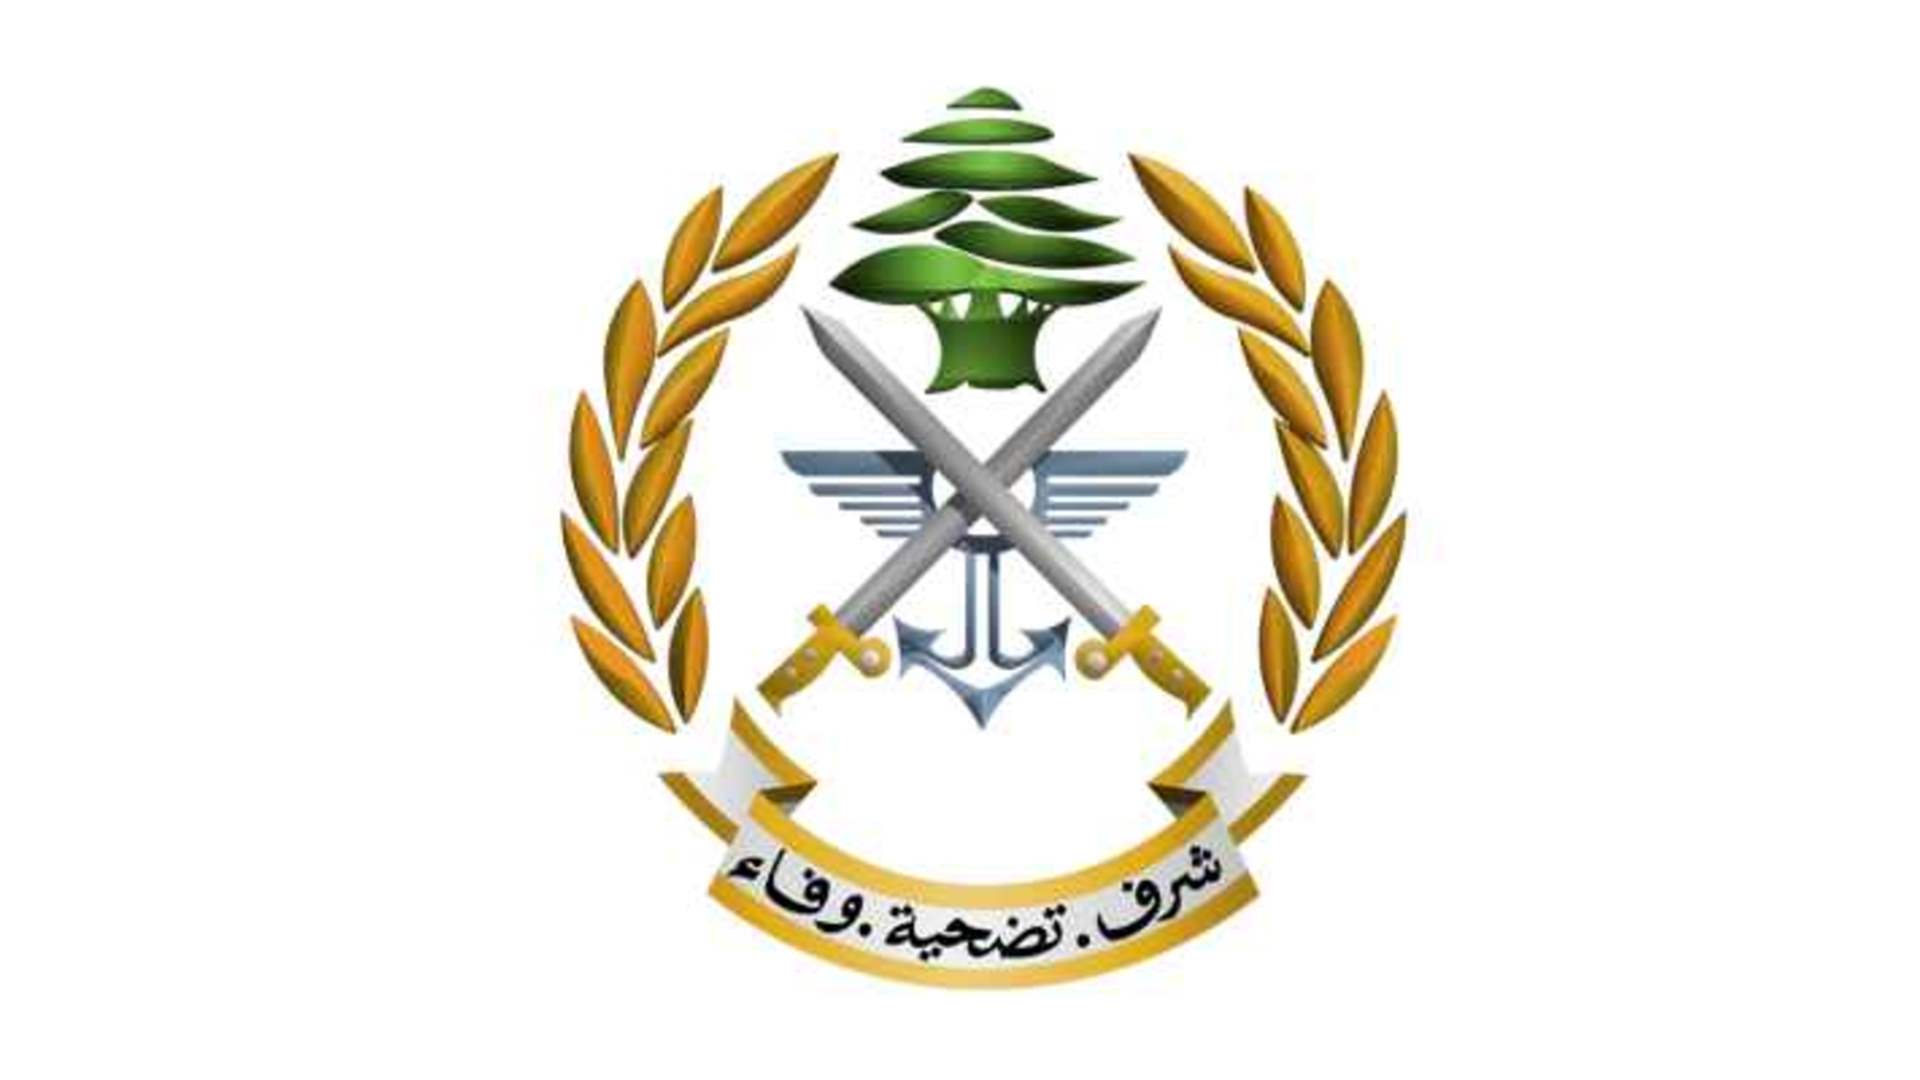 الجيش: تسجيل خرقين معاديين للمياه الإقليمية اللبنانية